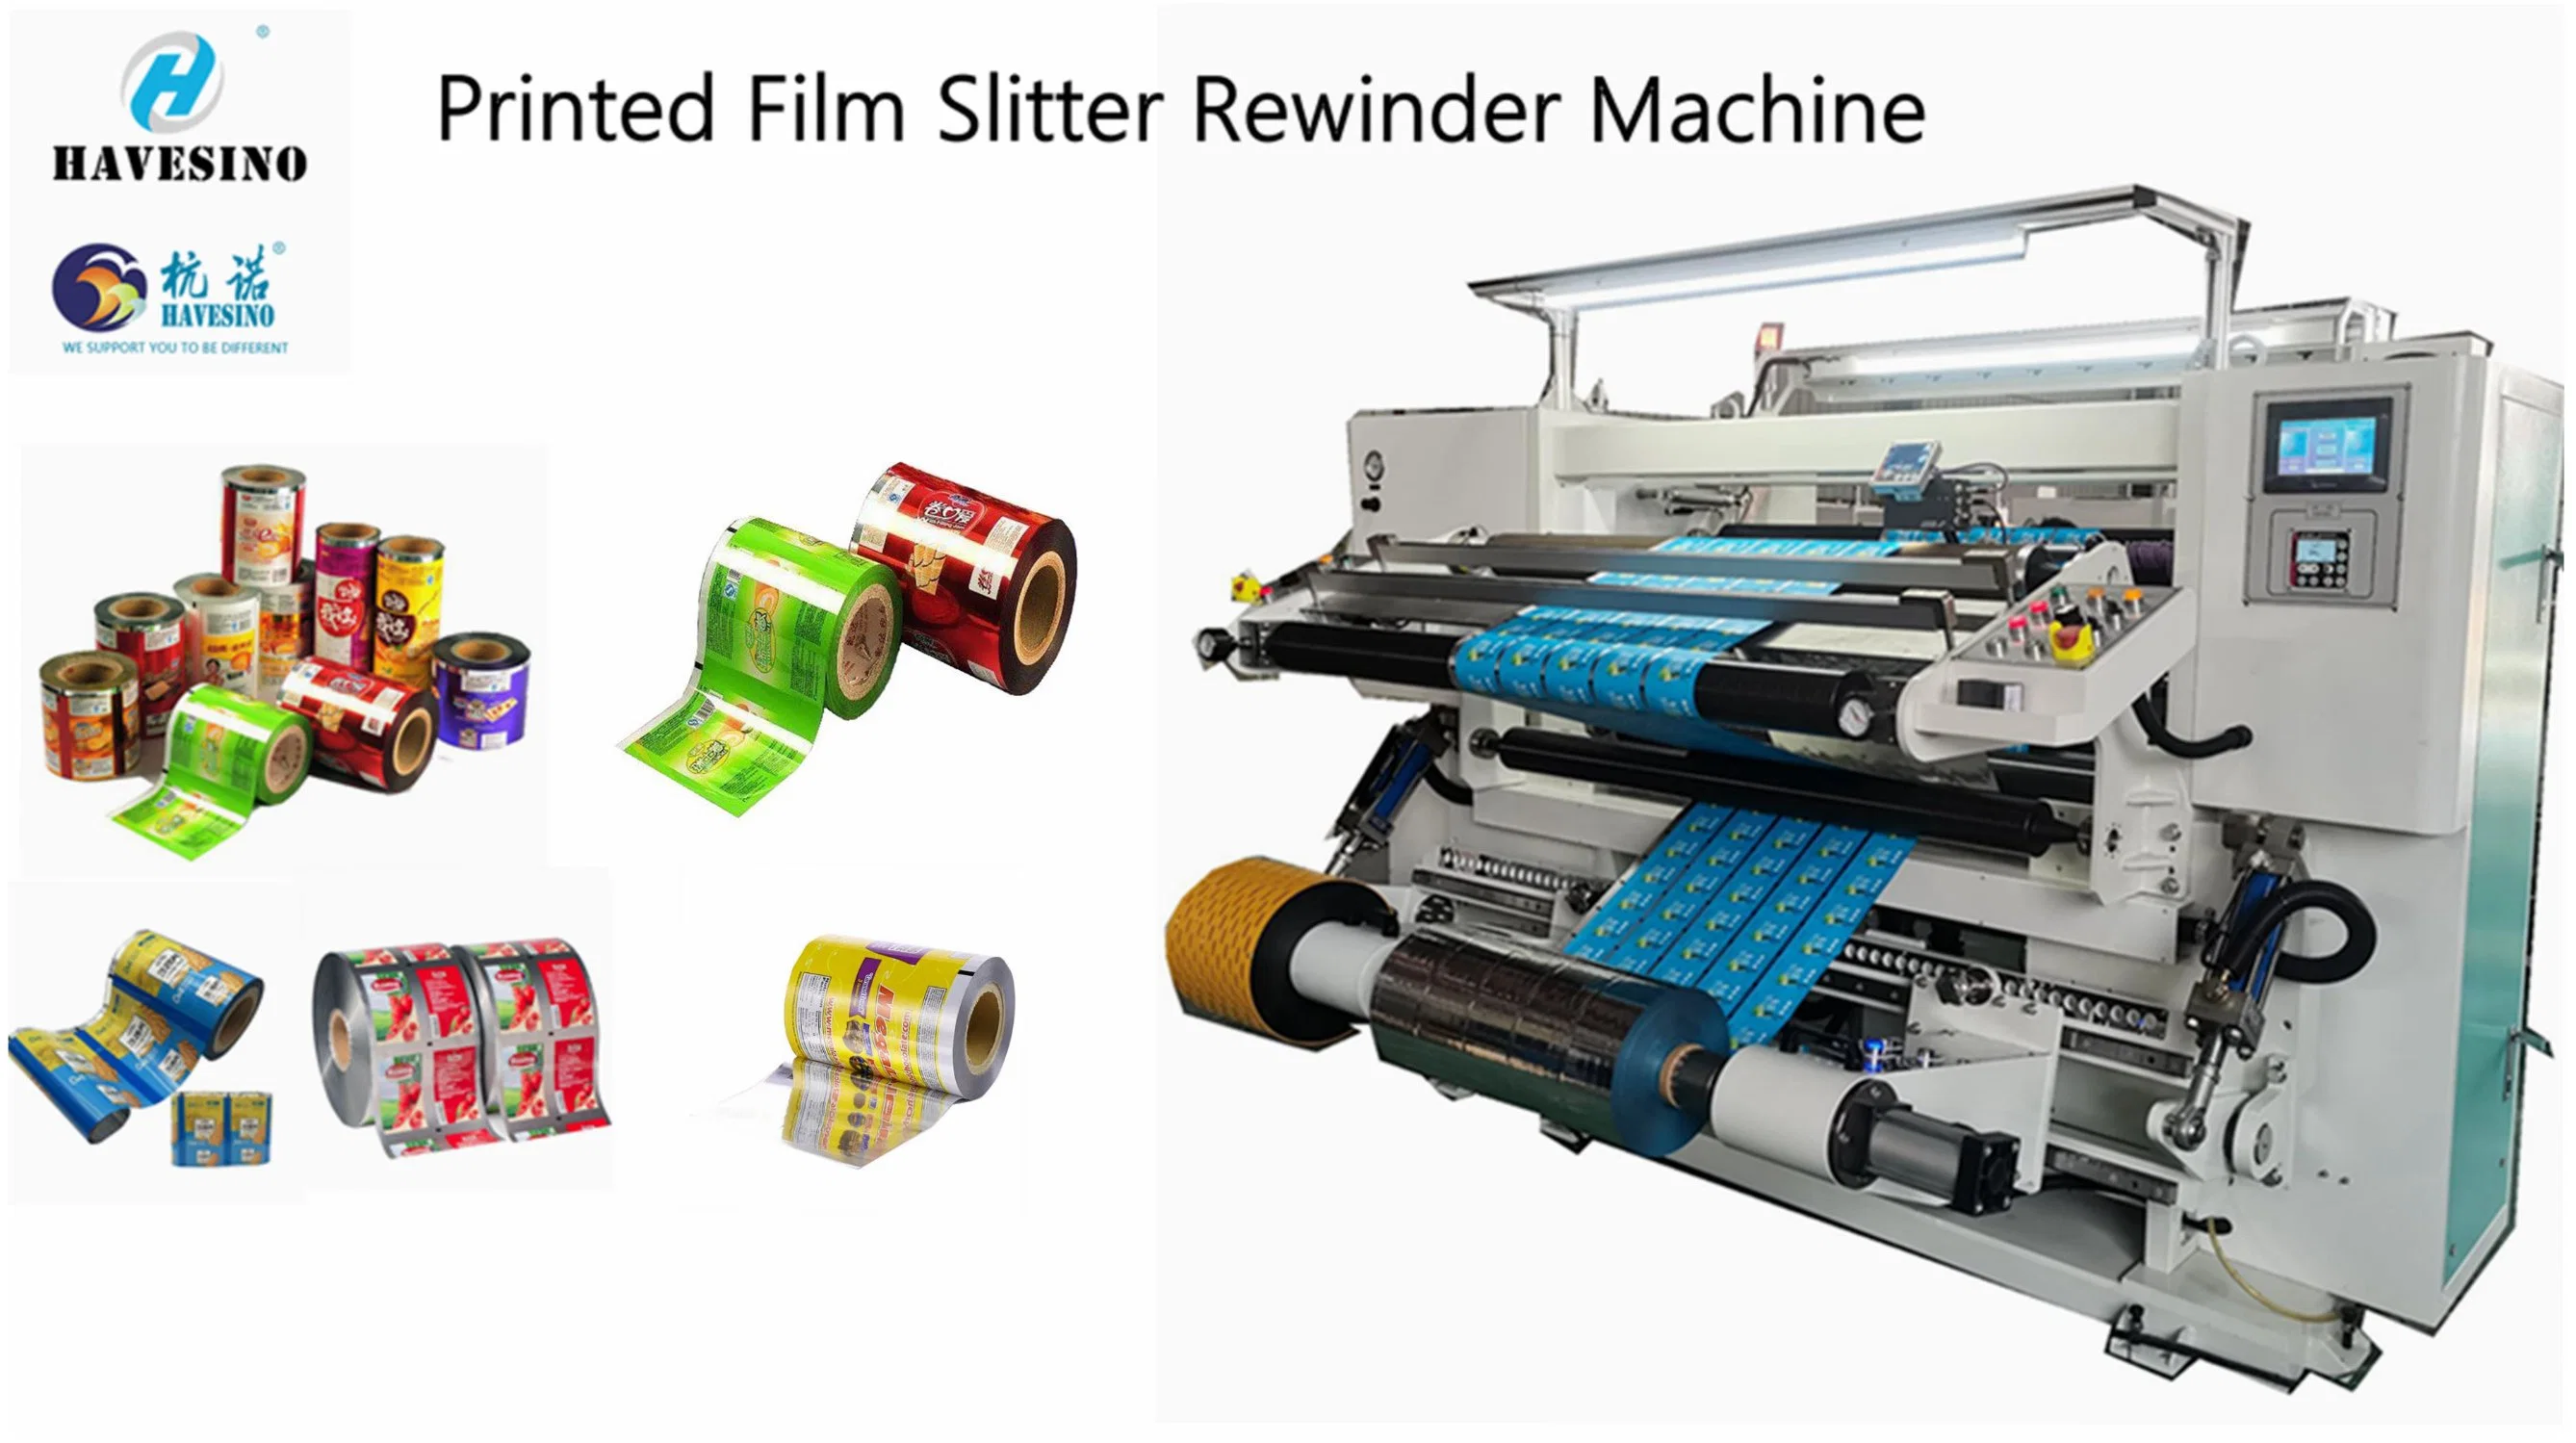 Auto Printed Film Kunststoff Film Slitter Rewinder Maschine Schlitting Rewinding Maschine für Laminierfolie